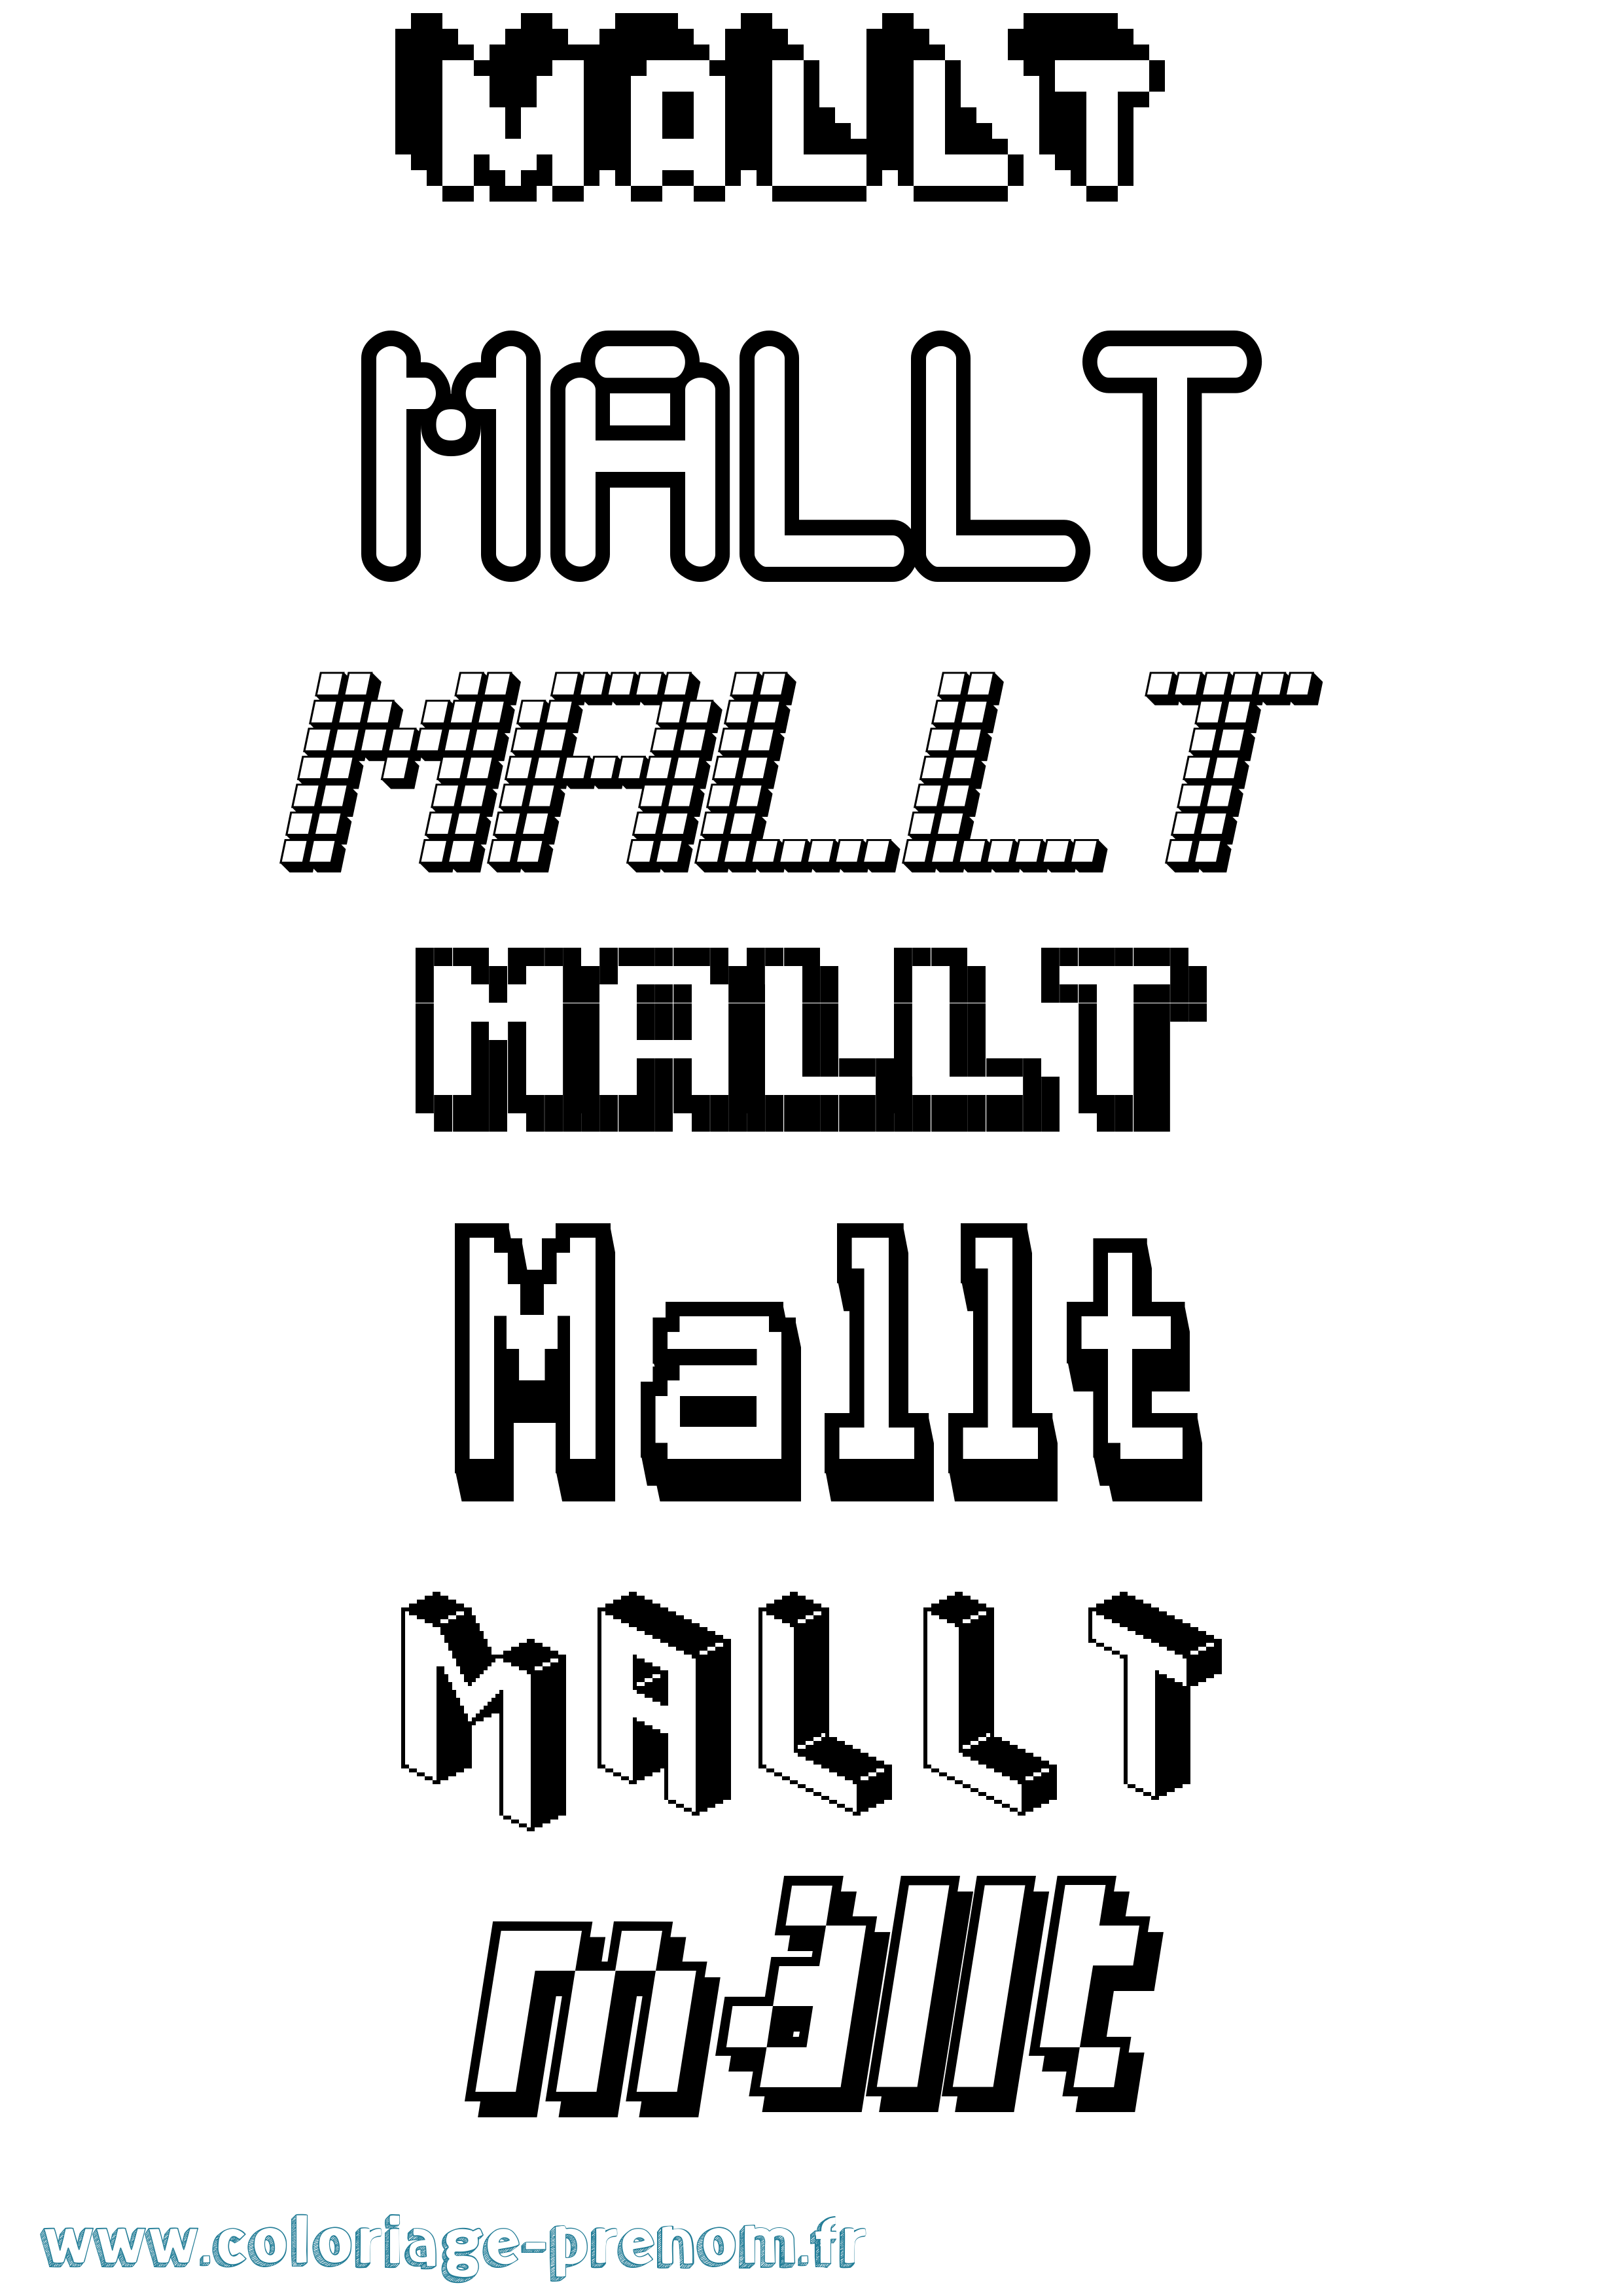 Coloriage prénom Mallt Pixel